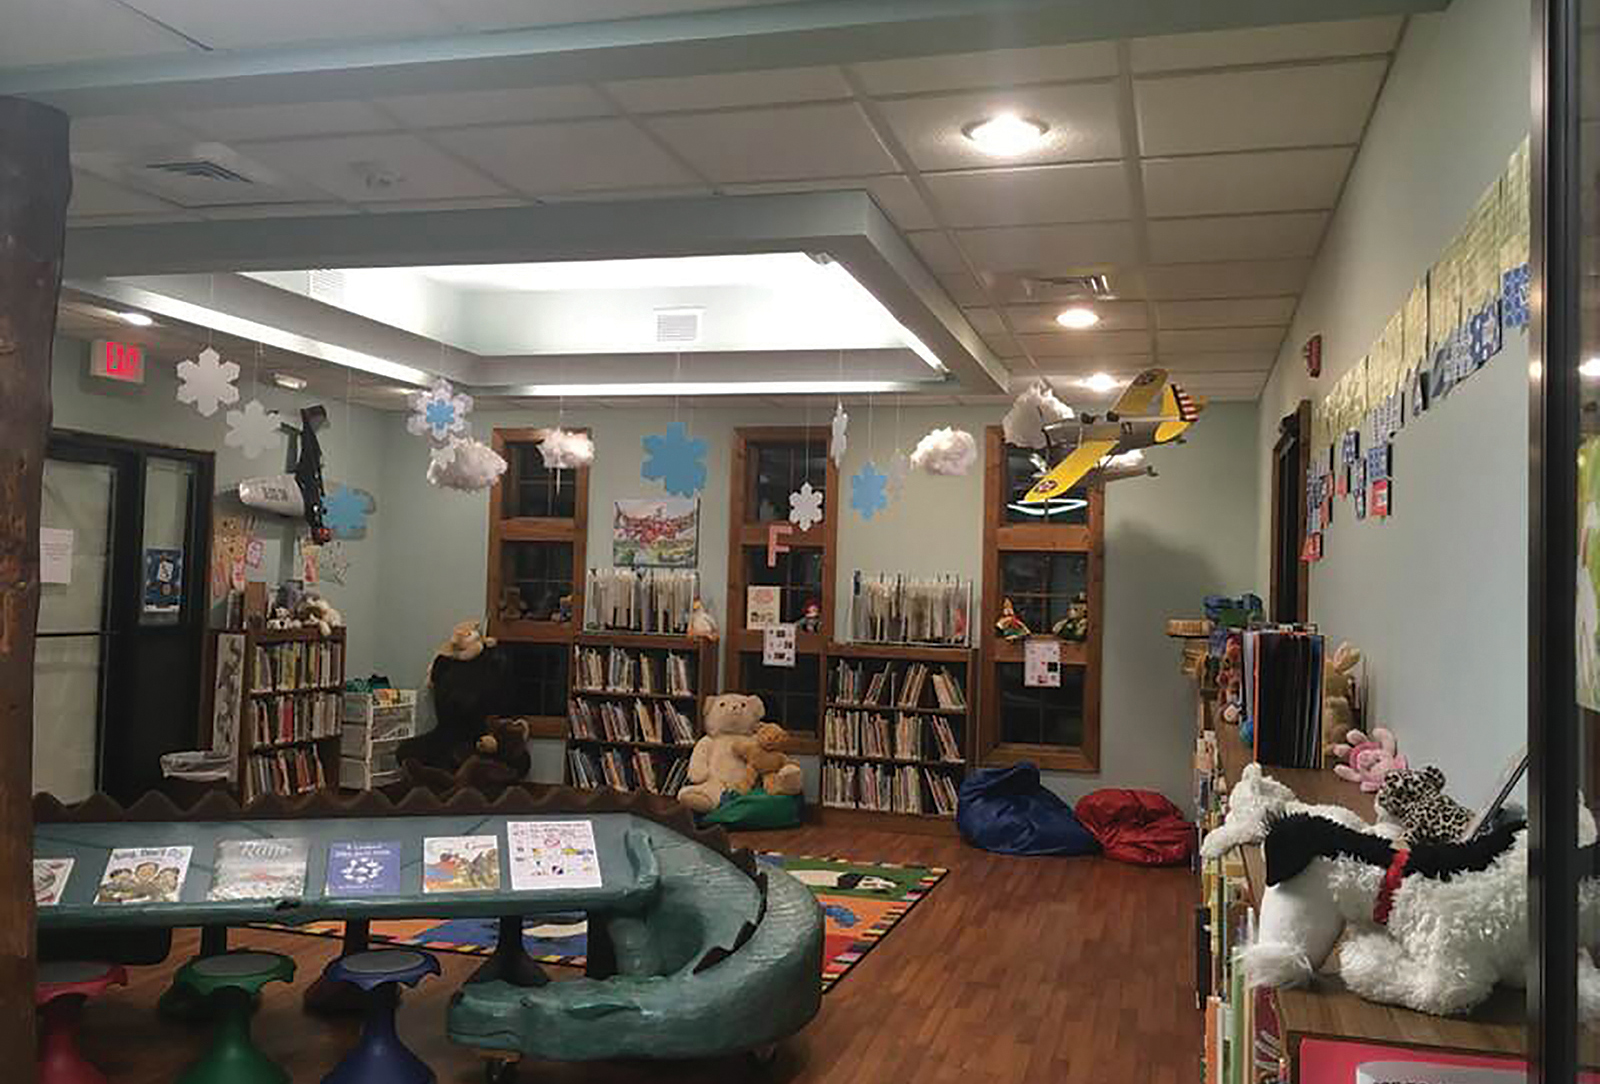 Hudson-library-kids-room-highlands-nc